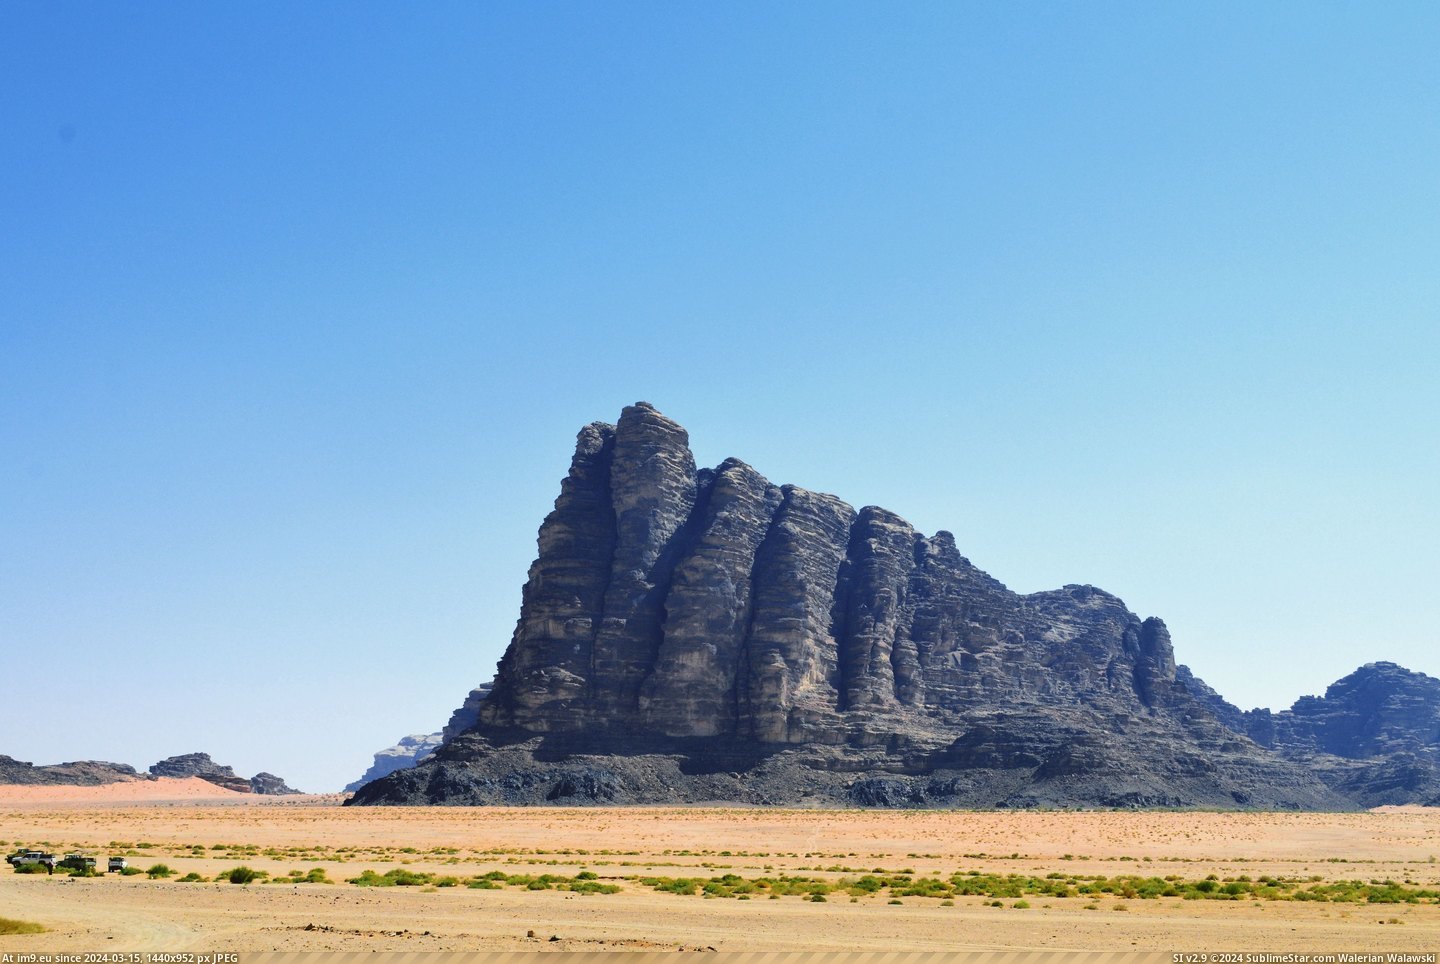 #Rock #Desert #Rum #Gigantic #Wadi #Jordan #Formation [Earthporn] A gigantic rock formation in the Wadi Rum Desert, Jordan [OC] [5757 x 3828] Pic. (Image of album My r/EARTHPORN favs))